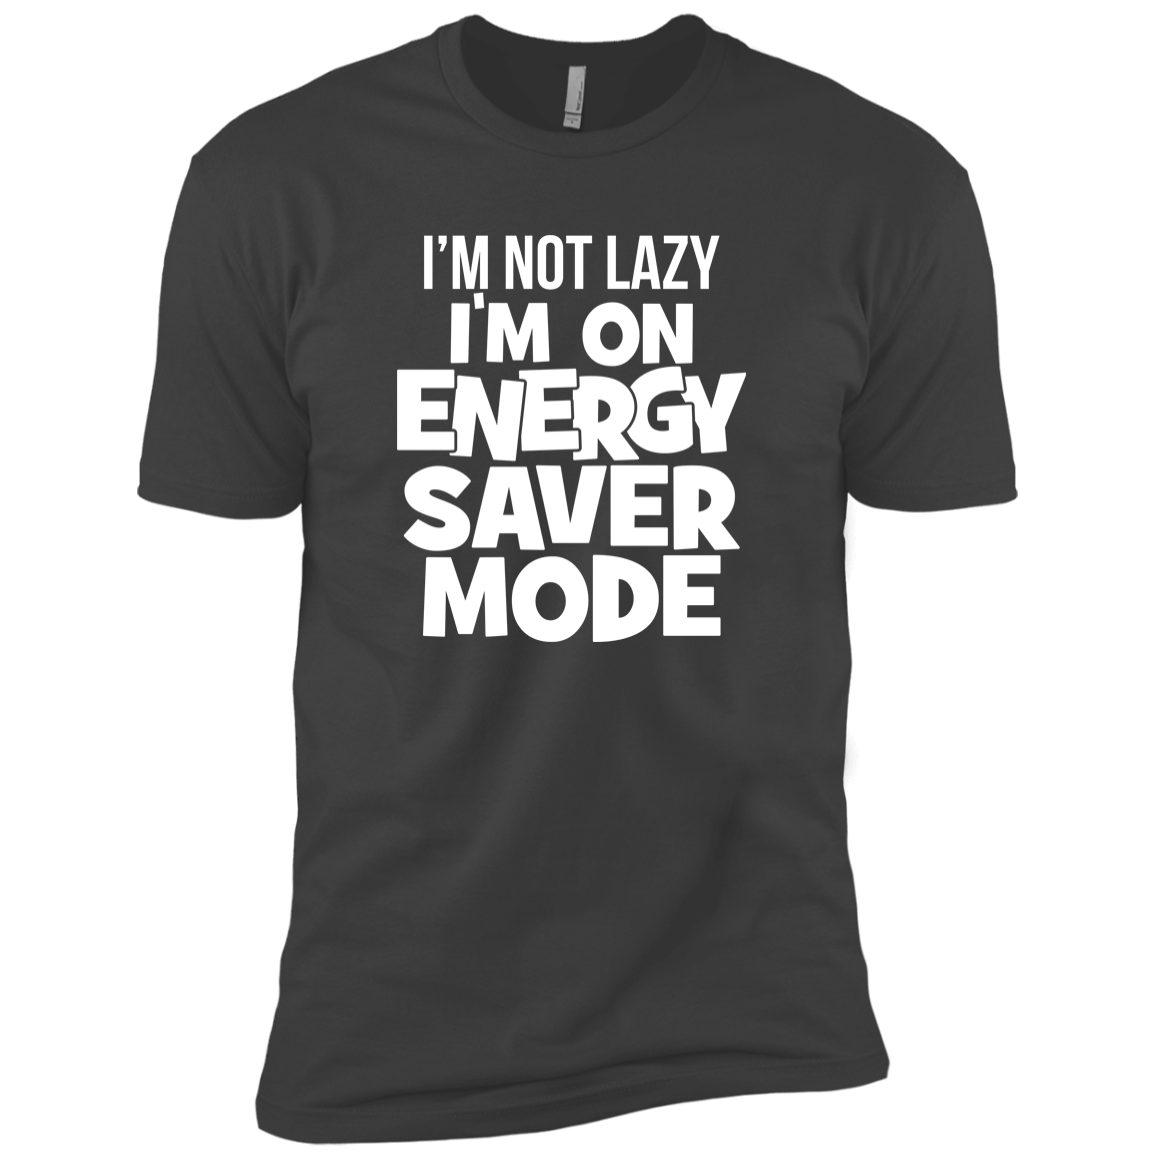 I'm Not Lazy, I'm On Energy Saver Mode!